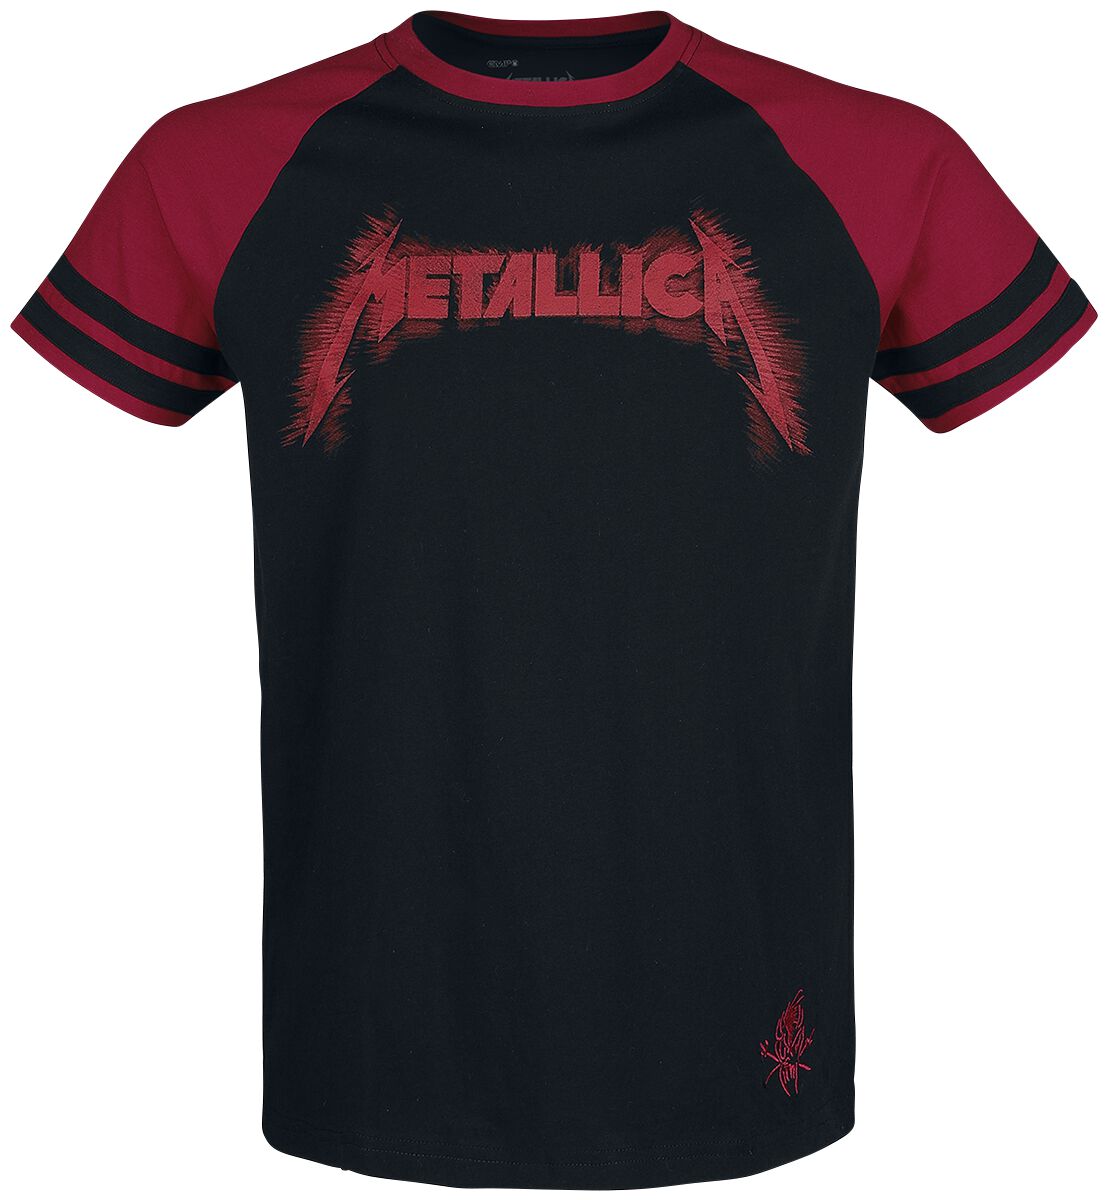 Metallica T-Shirt - EMP Signature Collection - M bis 3XL - für Männer - Größe L - schwarz/rot  - EMP exklusives Merchandise!